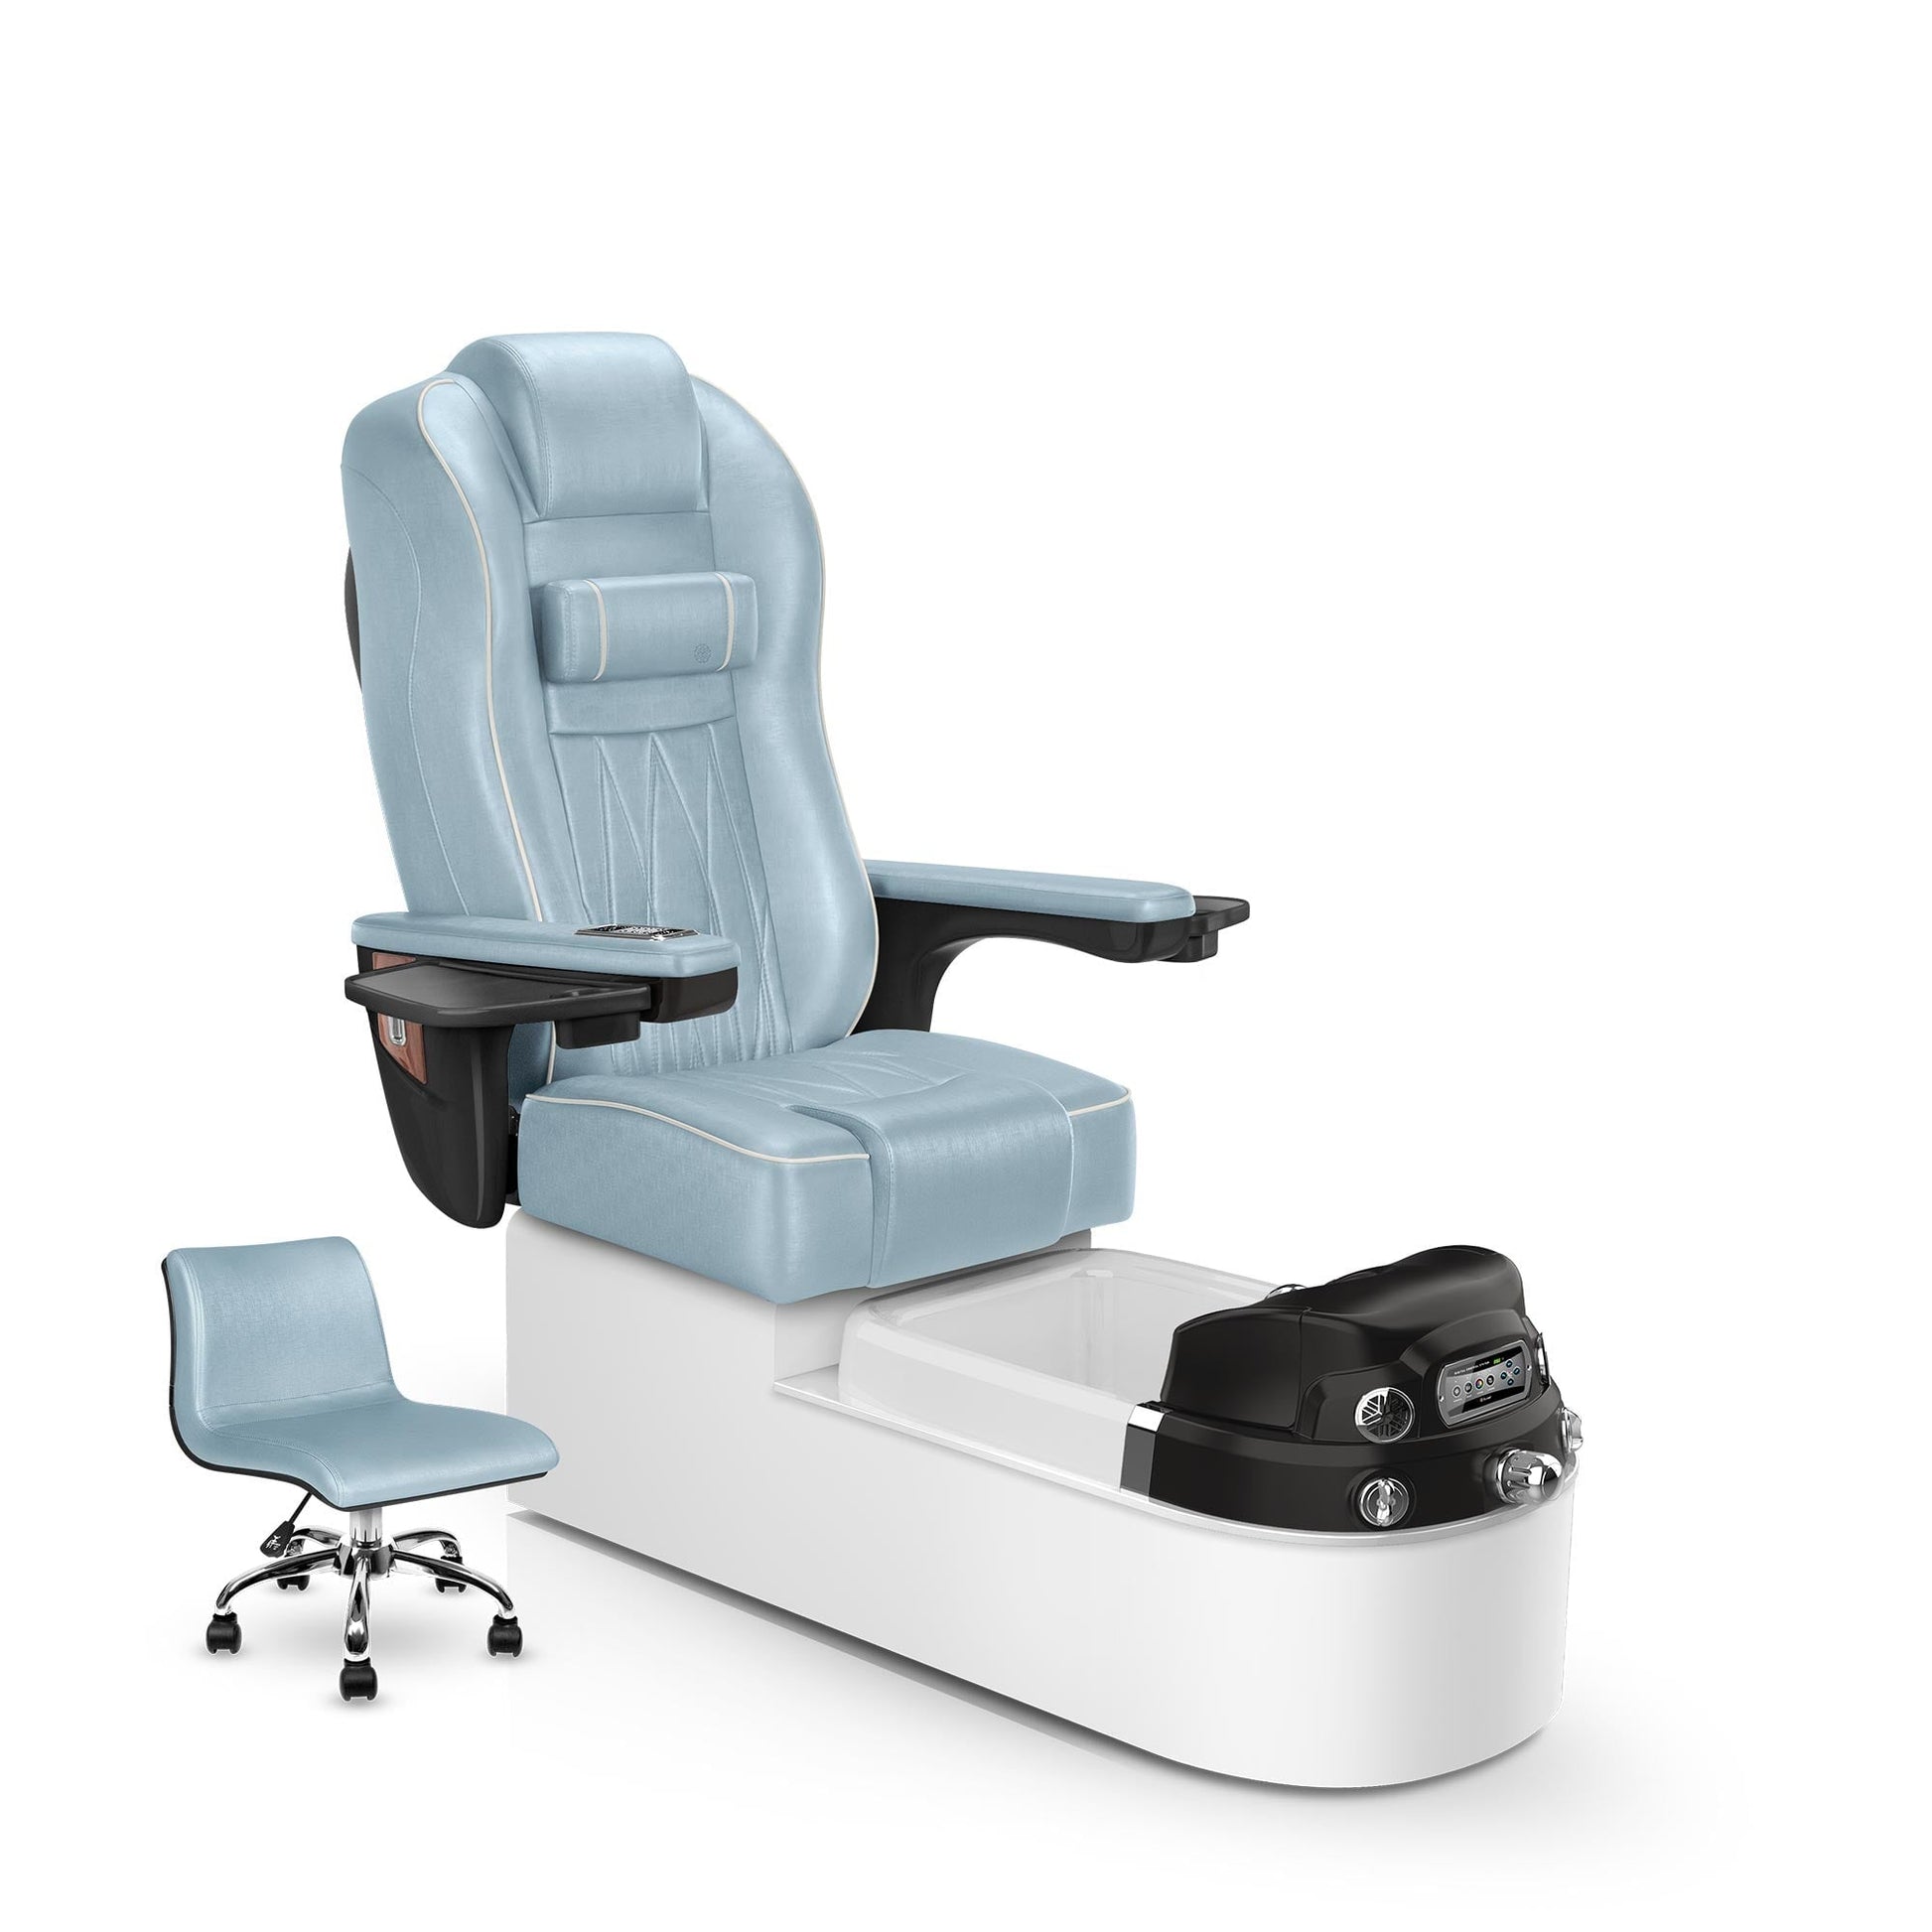 Lexor Envision pedicure chair glacier blue cushion and white pearl base